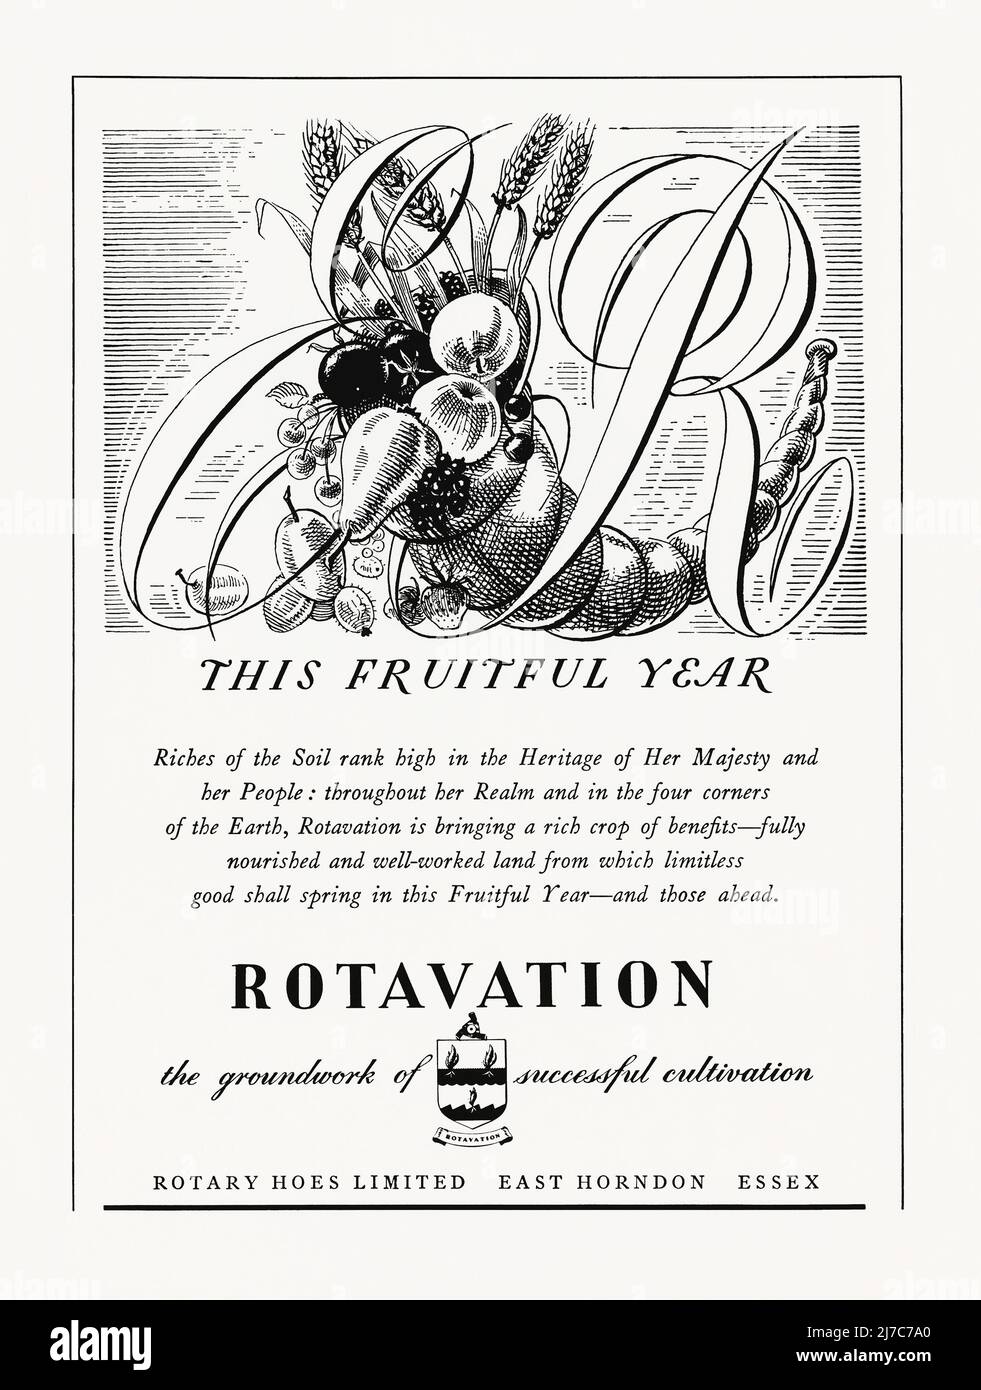 Rotary Hoes Ltd., eine 1953-Anzeige für die Drehhaenhersteller. Die Anzeige erschien in einem Magazin, das im Juni dieses Jahres in Großbritannien veröffentlicht wurde – es handelte sich um eine Sonderausgabe, die anlässlich der Krönung von Königin Elizabeth veröffentlicht wurde. Die stilvolle Liniendarstellung, die die Rotation in der Landwirtschaft fördert, zeigt Obst- und Getreidekulturen – die ‘Ein fruchtbares Jahr’ markieren – umhüllt die Buchstaben ‘er’ (Elizabeth Regina). Die angetriebene Drehkolbenhacke wurde von Arthur Clifford Howard erfunden, der 1912 mit einer Dampftraktormaschine in Gilgandra, NSW, Australien, mit der Drehkolbenbearbeitung experimentierte – Vintage 1950s-Grafiken für redaktionelle Zwecke. Stockfoto